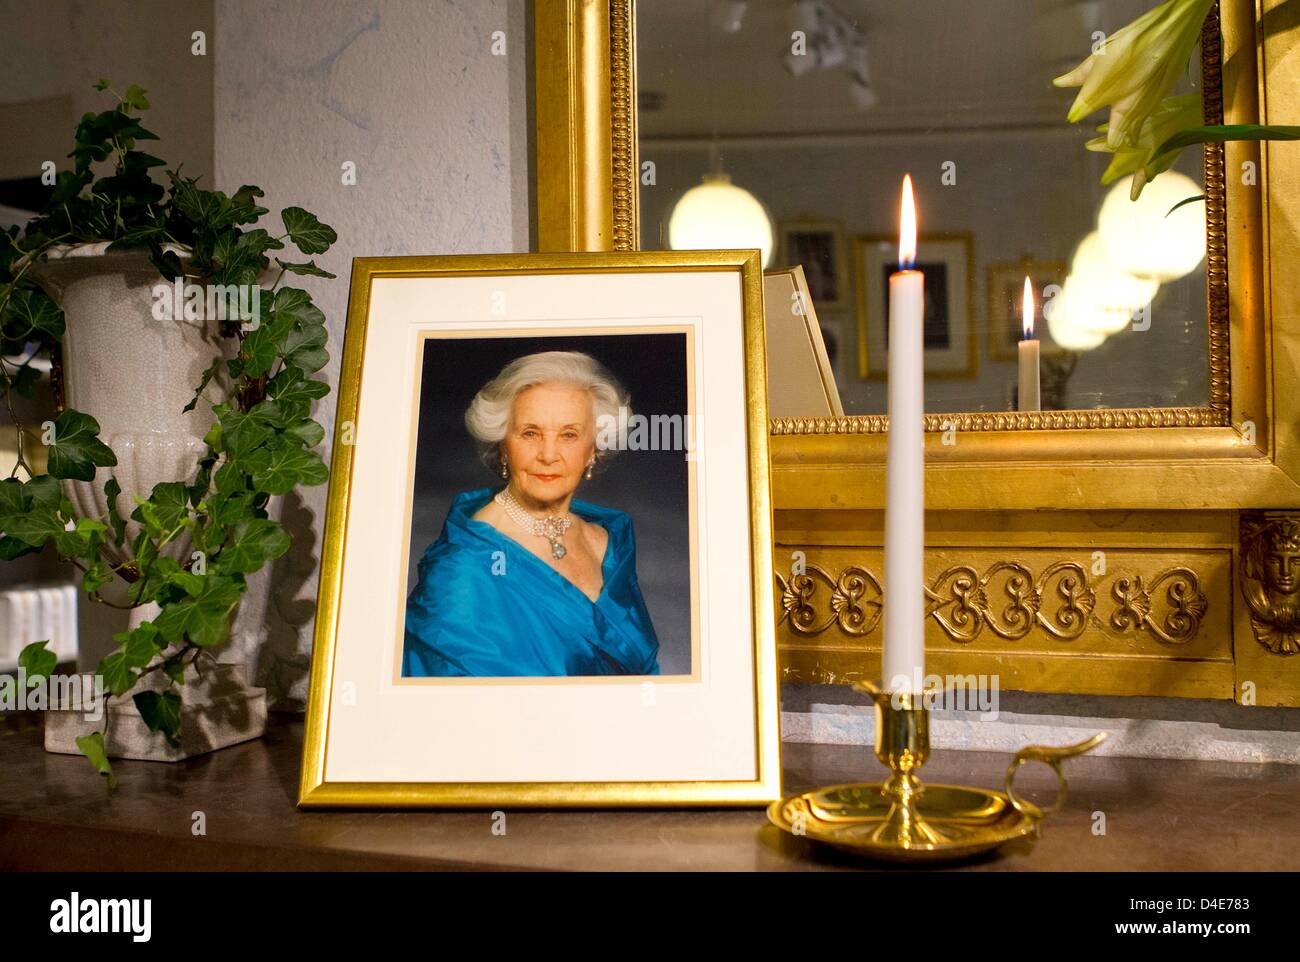 Une photo de la Princesse Lilian Swedisch est affiché dans un magasin à proximité du palais royal de Stockholm, 12 mars 2013. La princesse est décédée le 10 mars à l'âge de 97 ans. Photo : PRE-Albert Nieboer / Pays-Bas OUT Banque D'Images